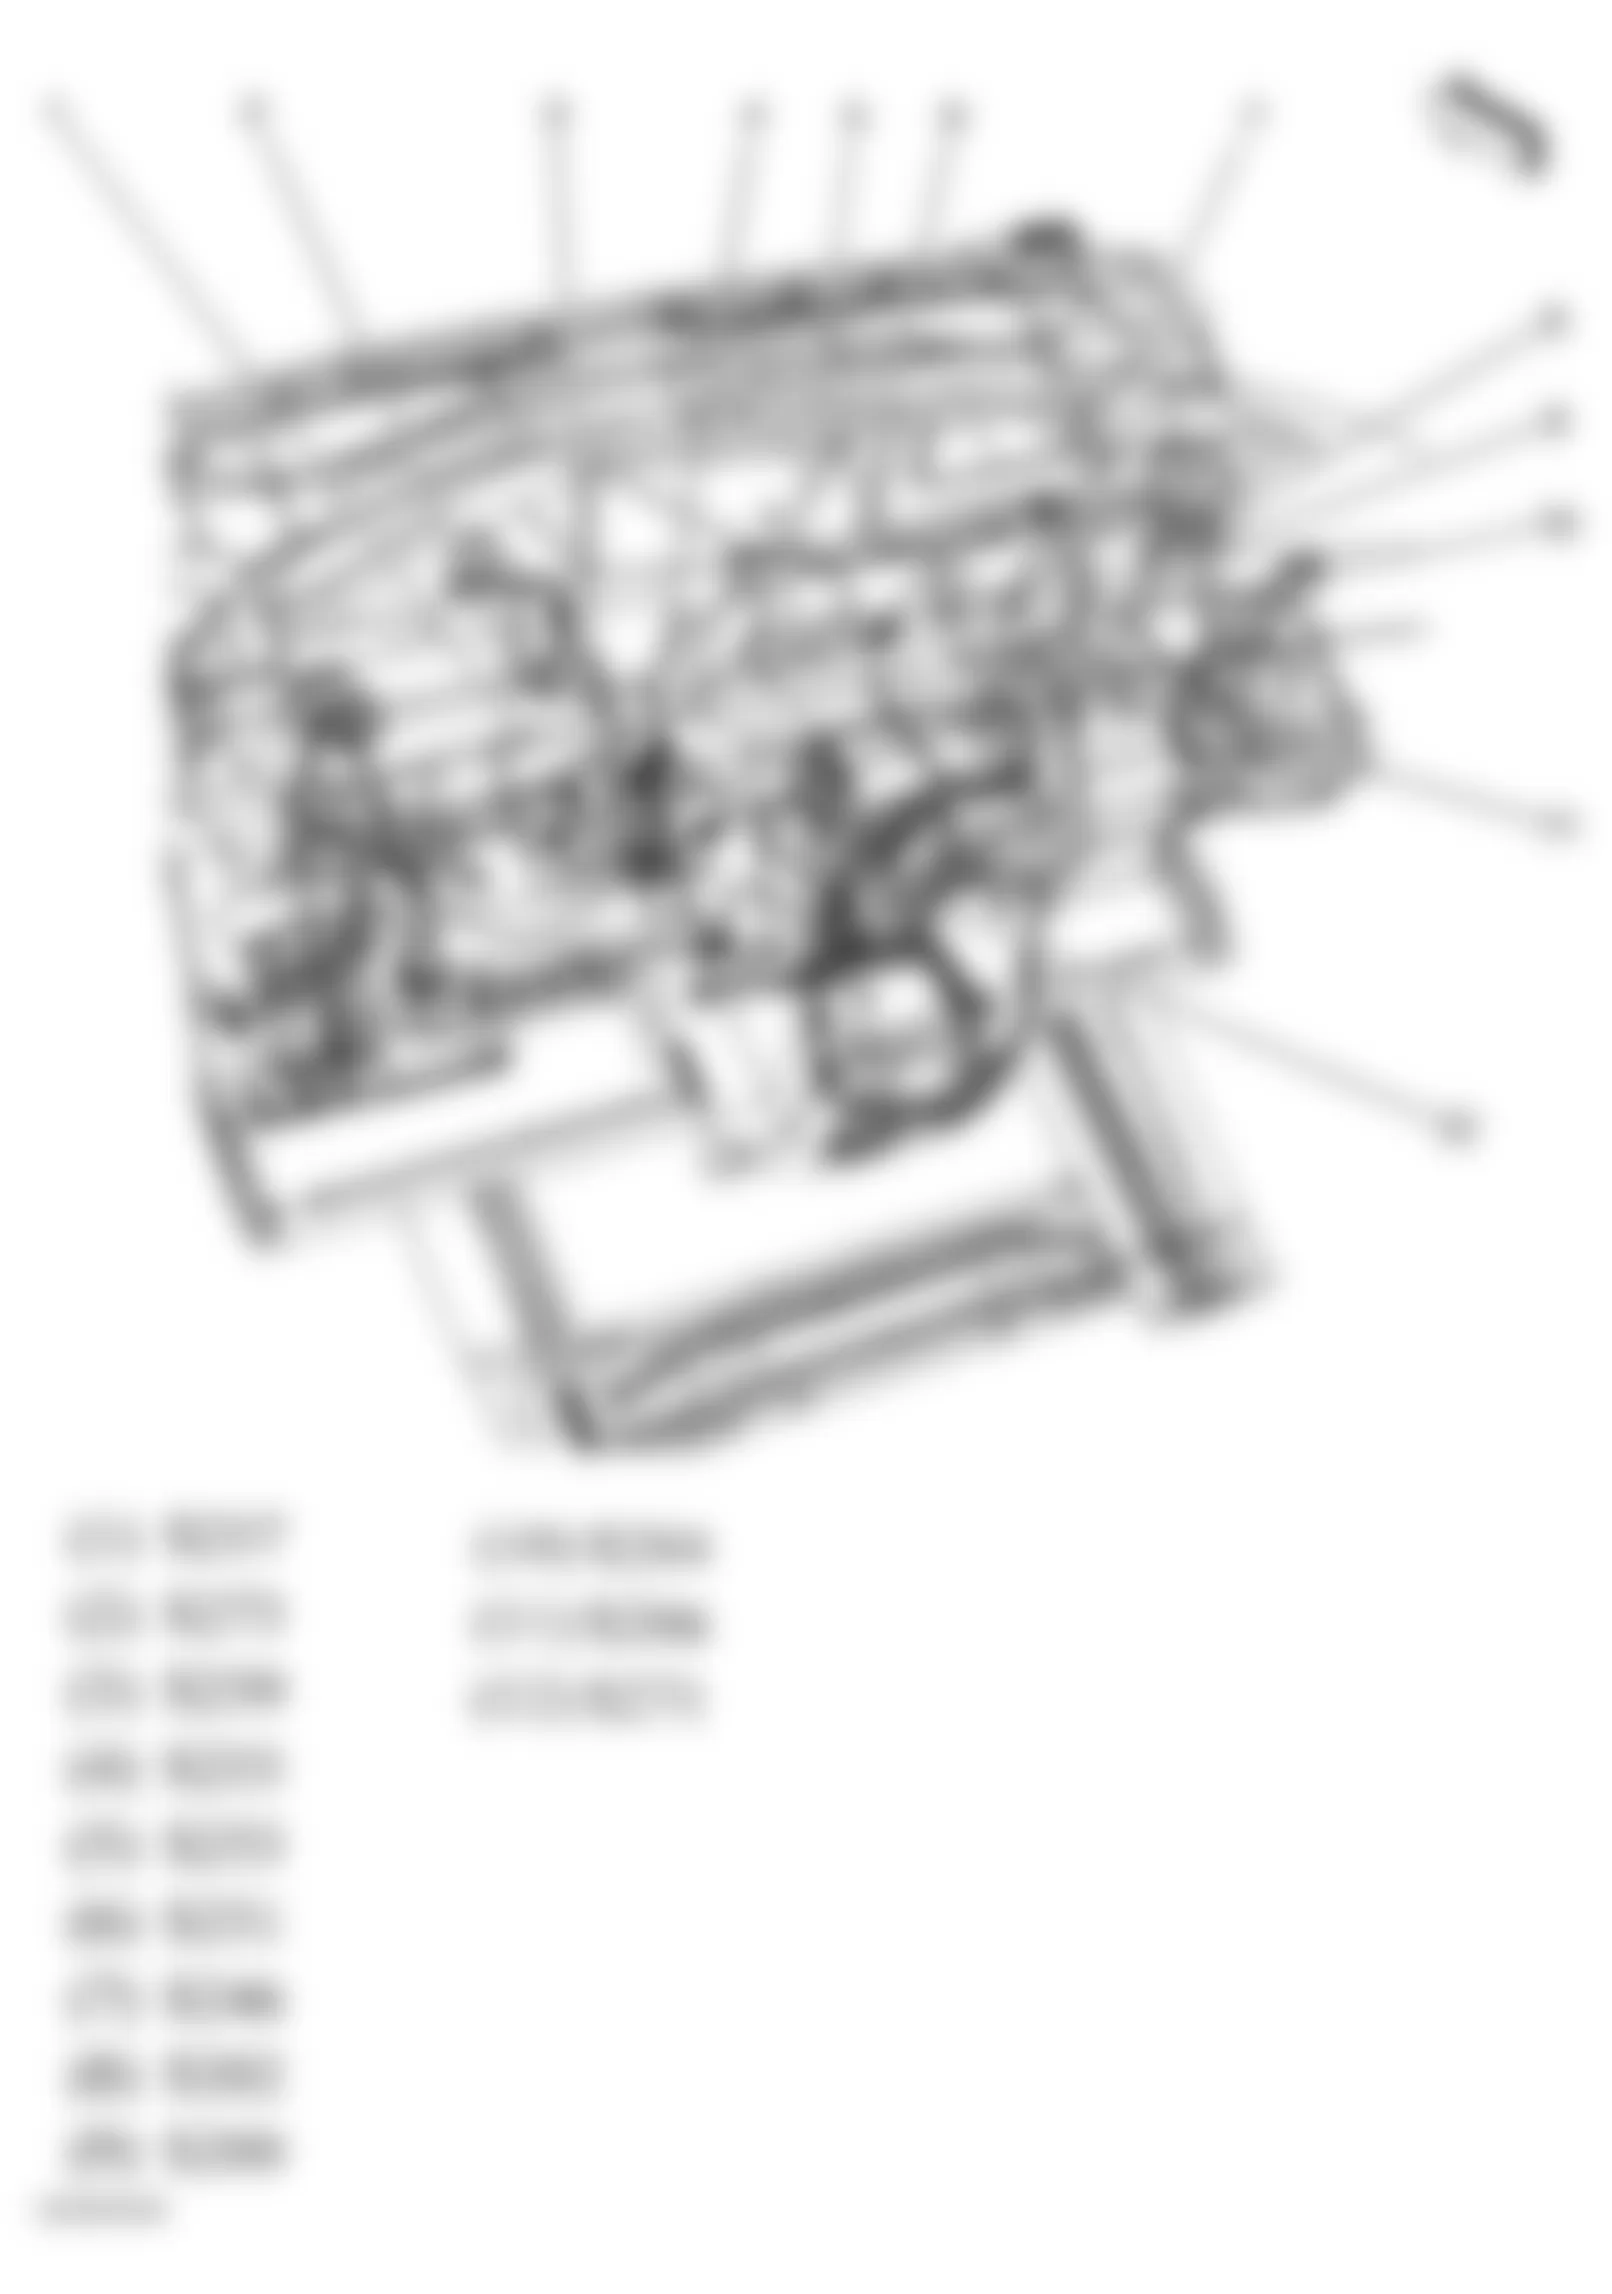 Buick Terraza CXL 2006 - Component Locations -  Dash